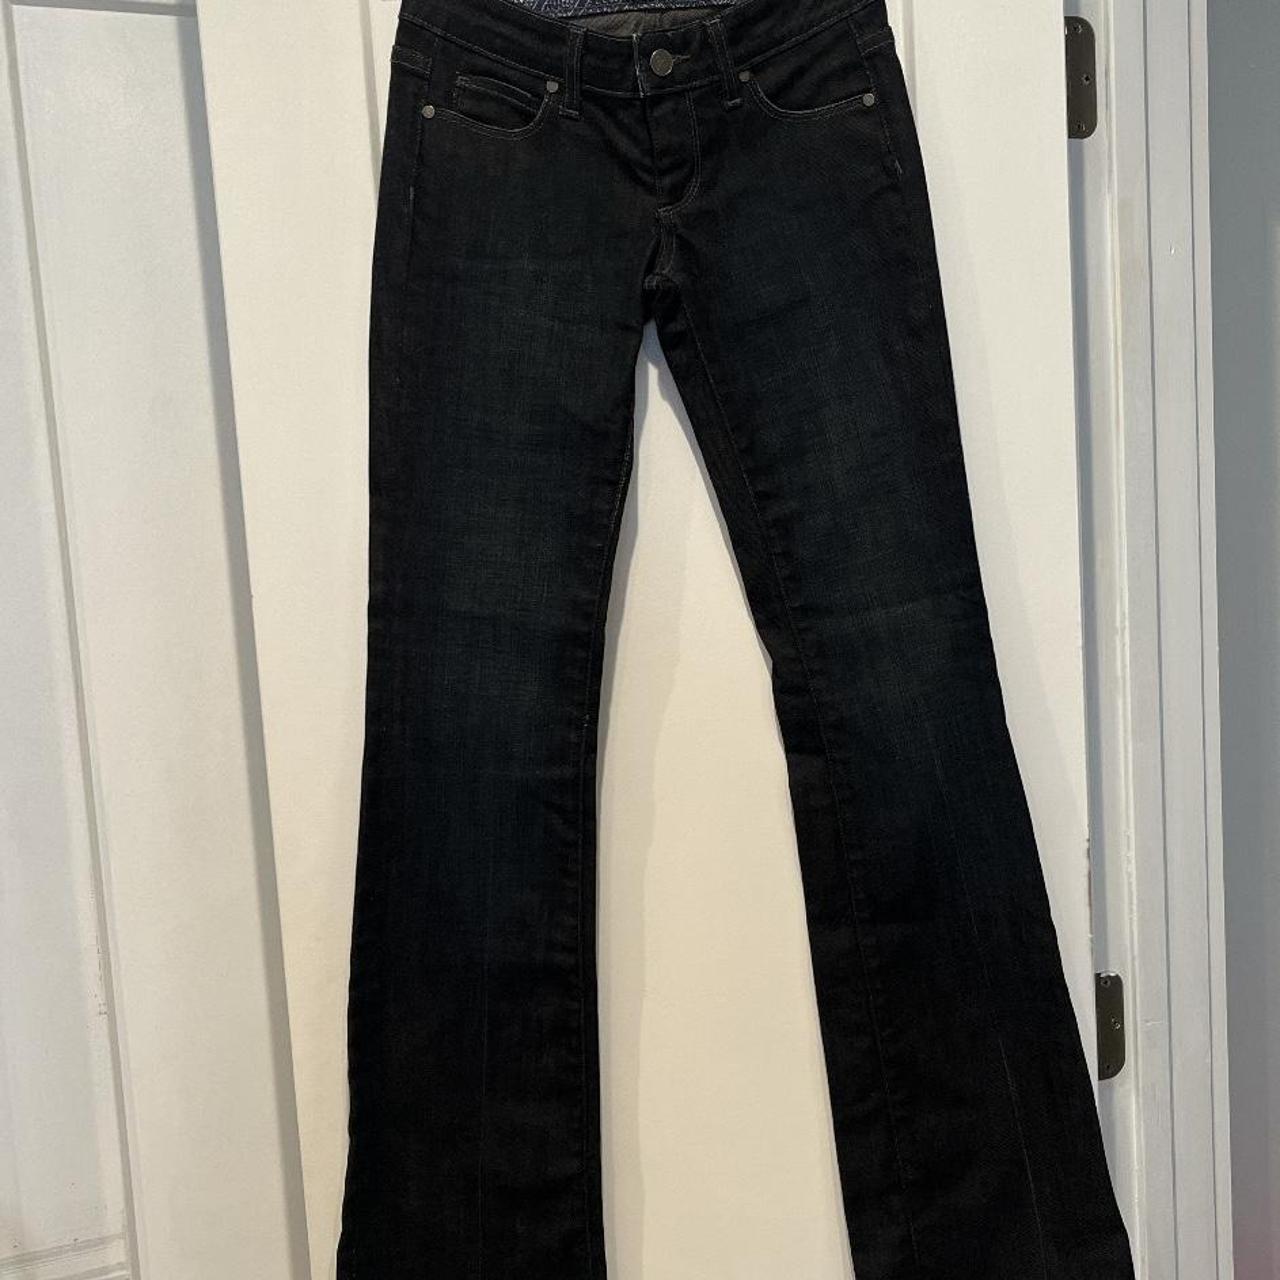 Vintage Y2K low rise boot cut jeans Size 24/... - Depop